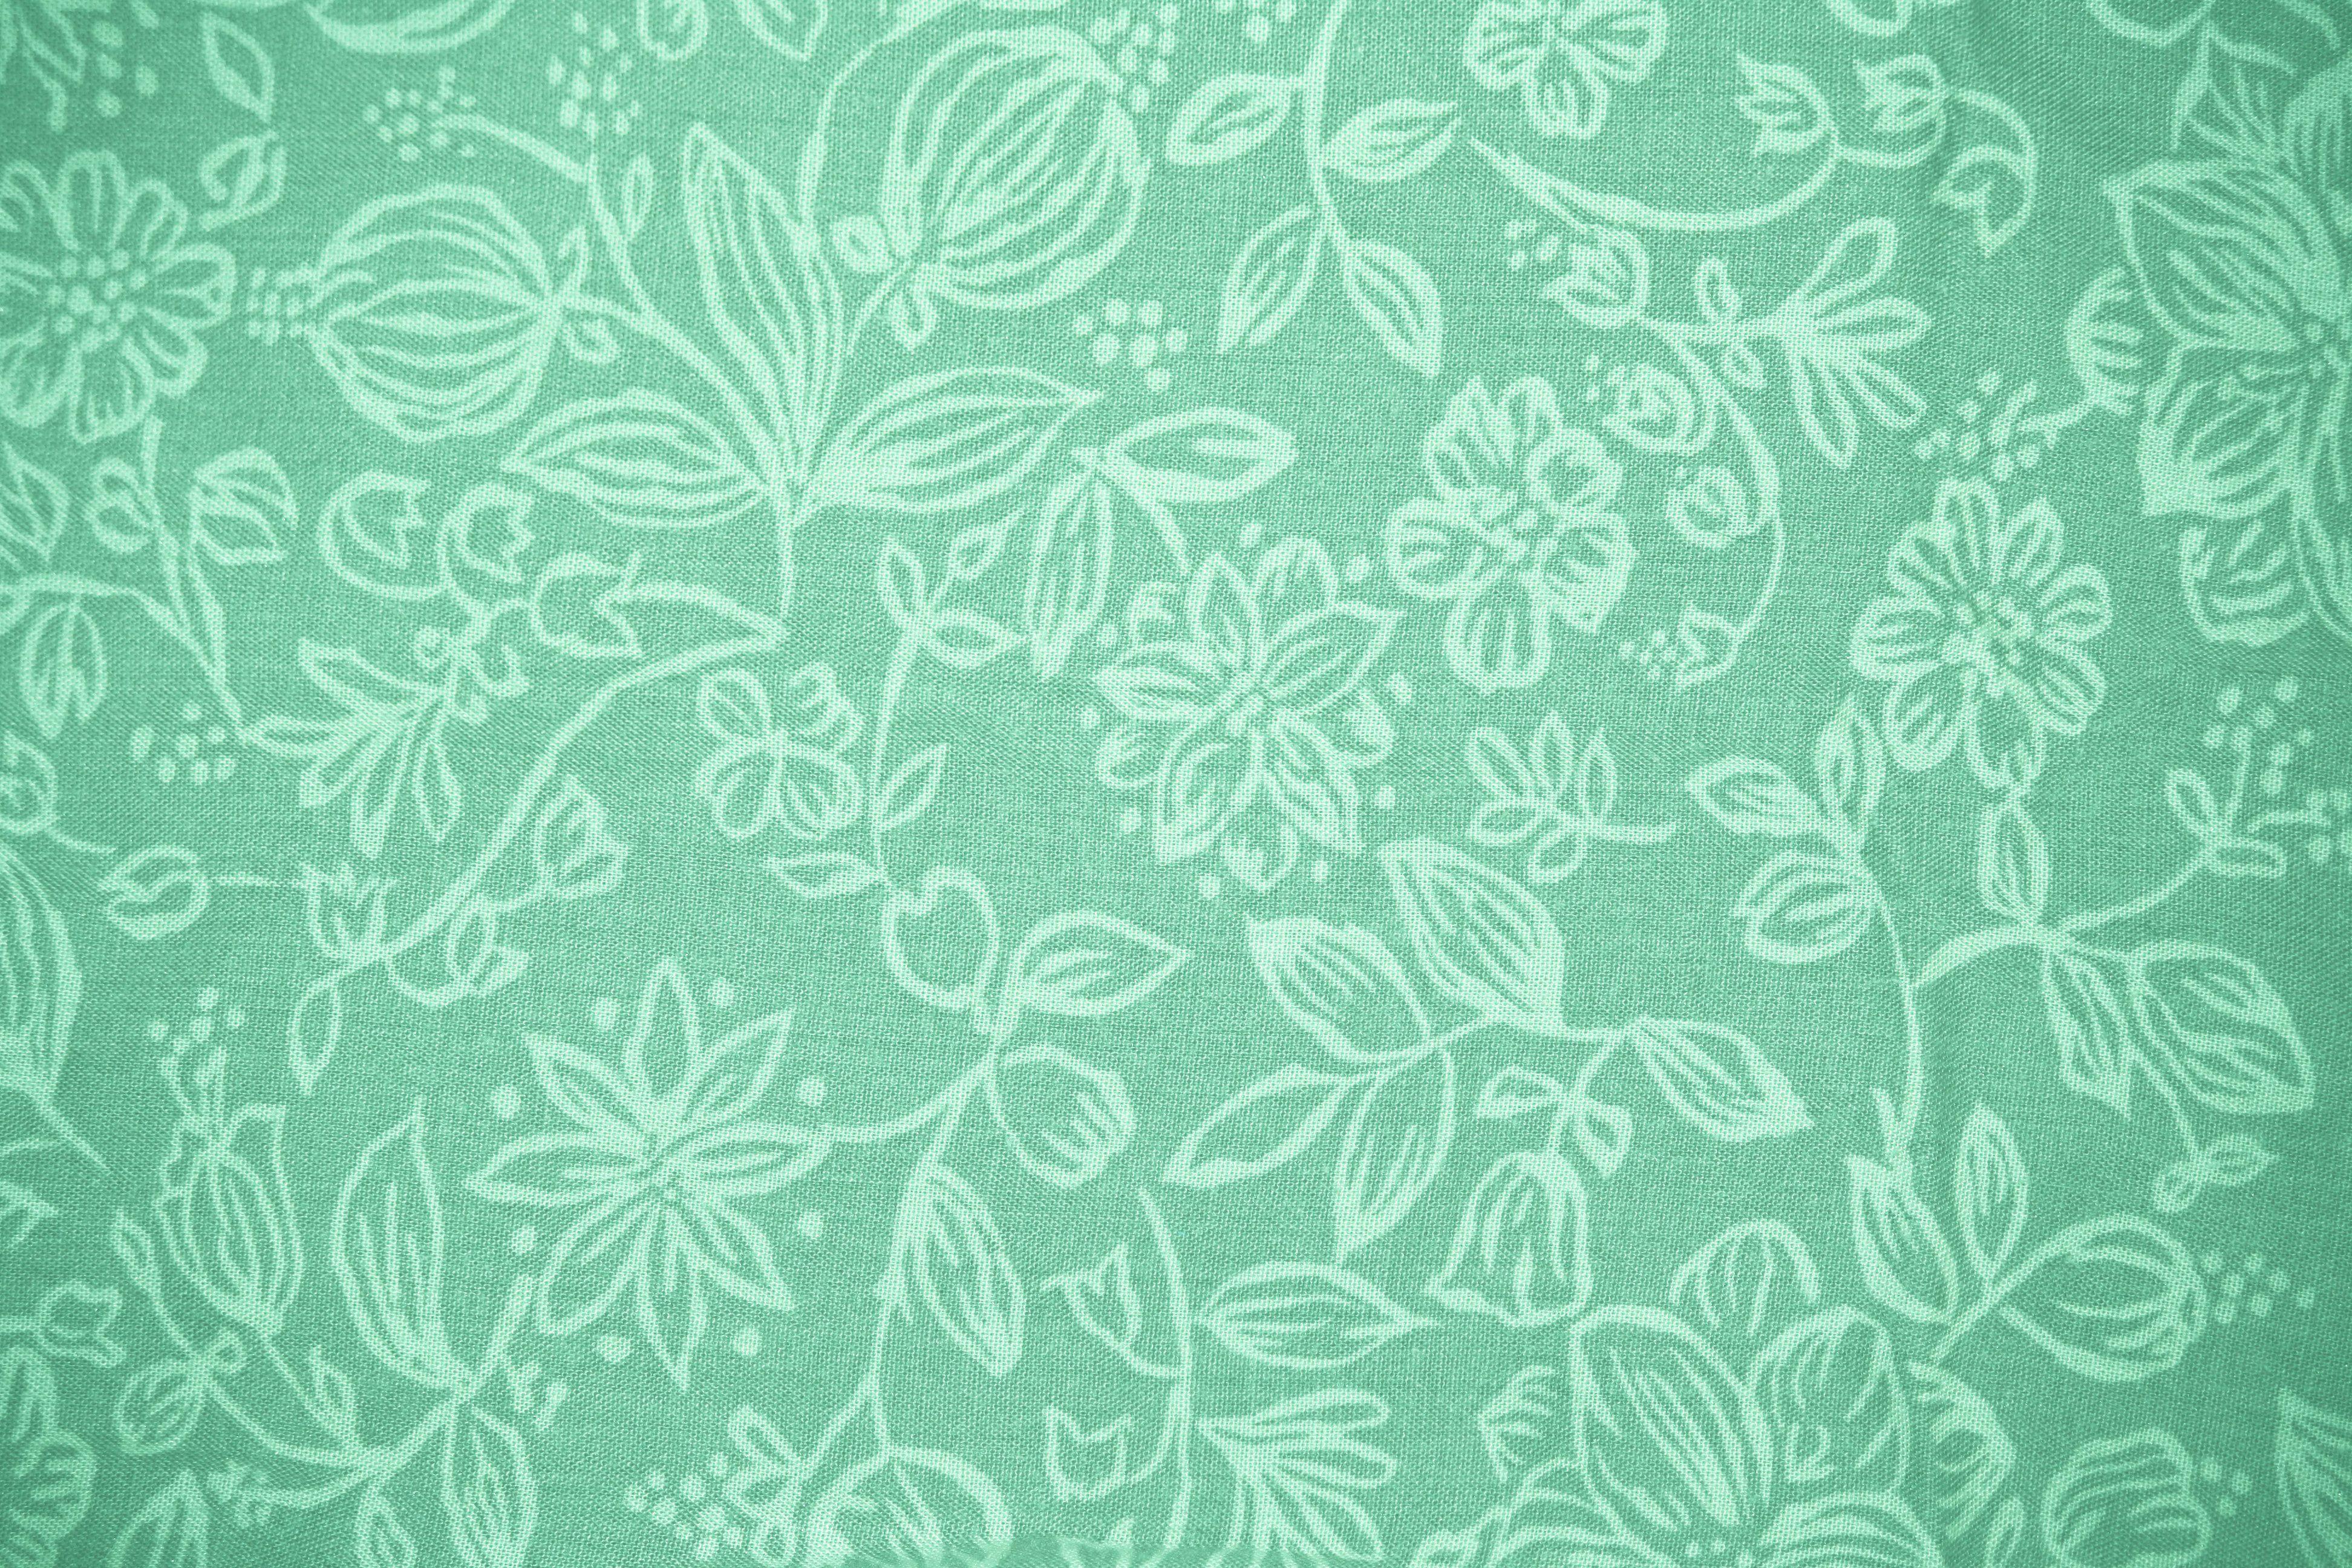 Mint Green Desktop Wallpaper .wallpaperaccess.com